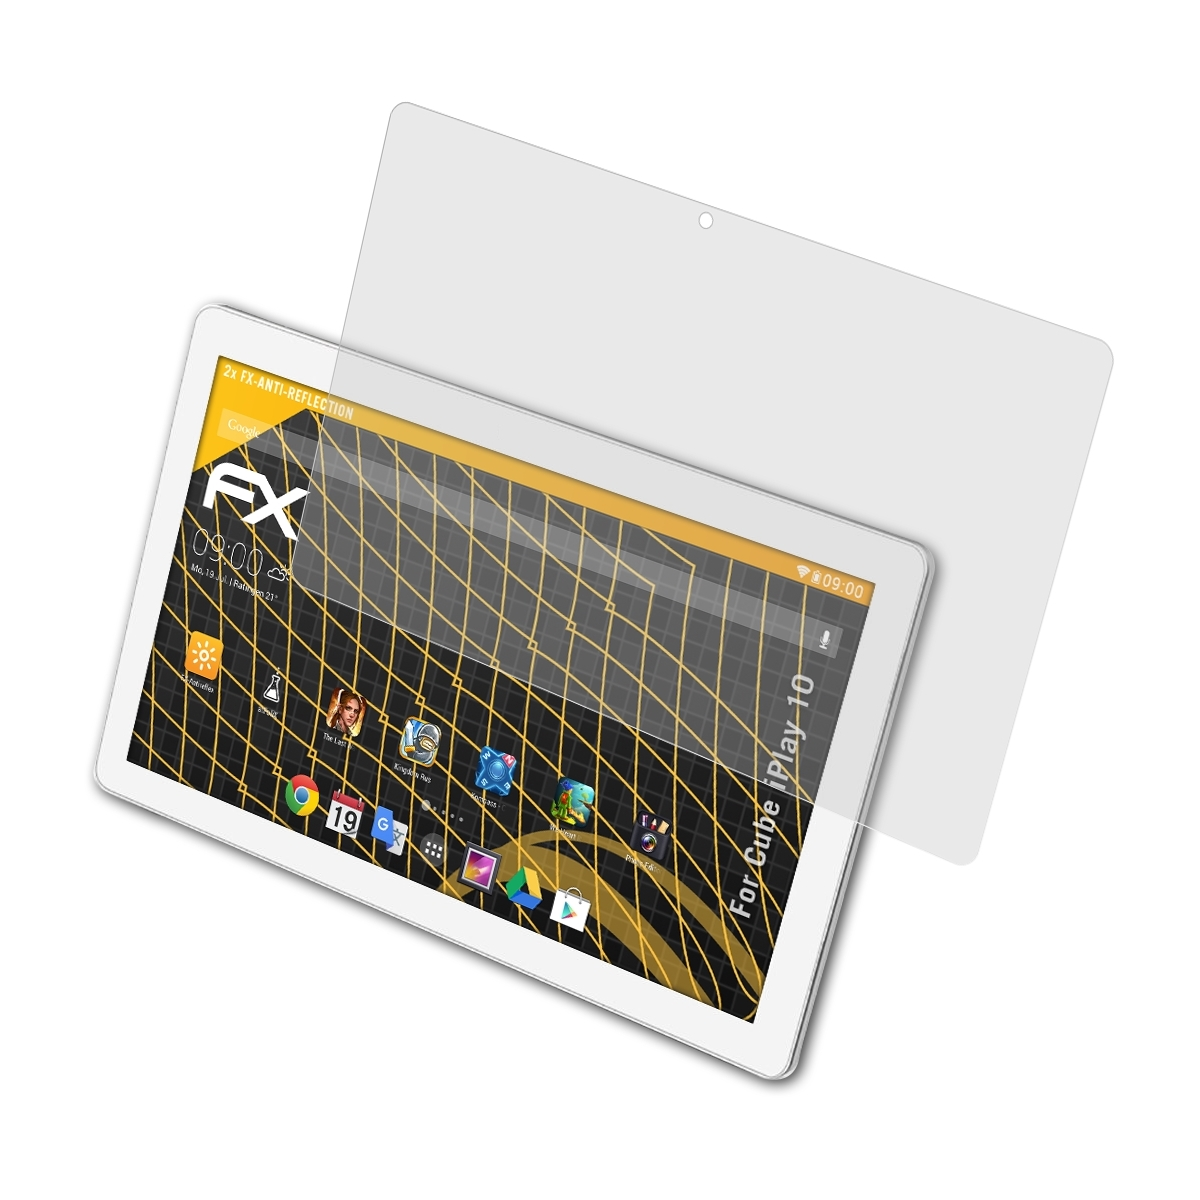 10) iPlay ATFOLIX Cube FX-Antireflex 2x Displayschutz(für